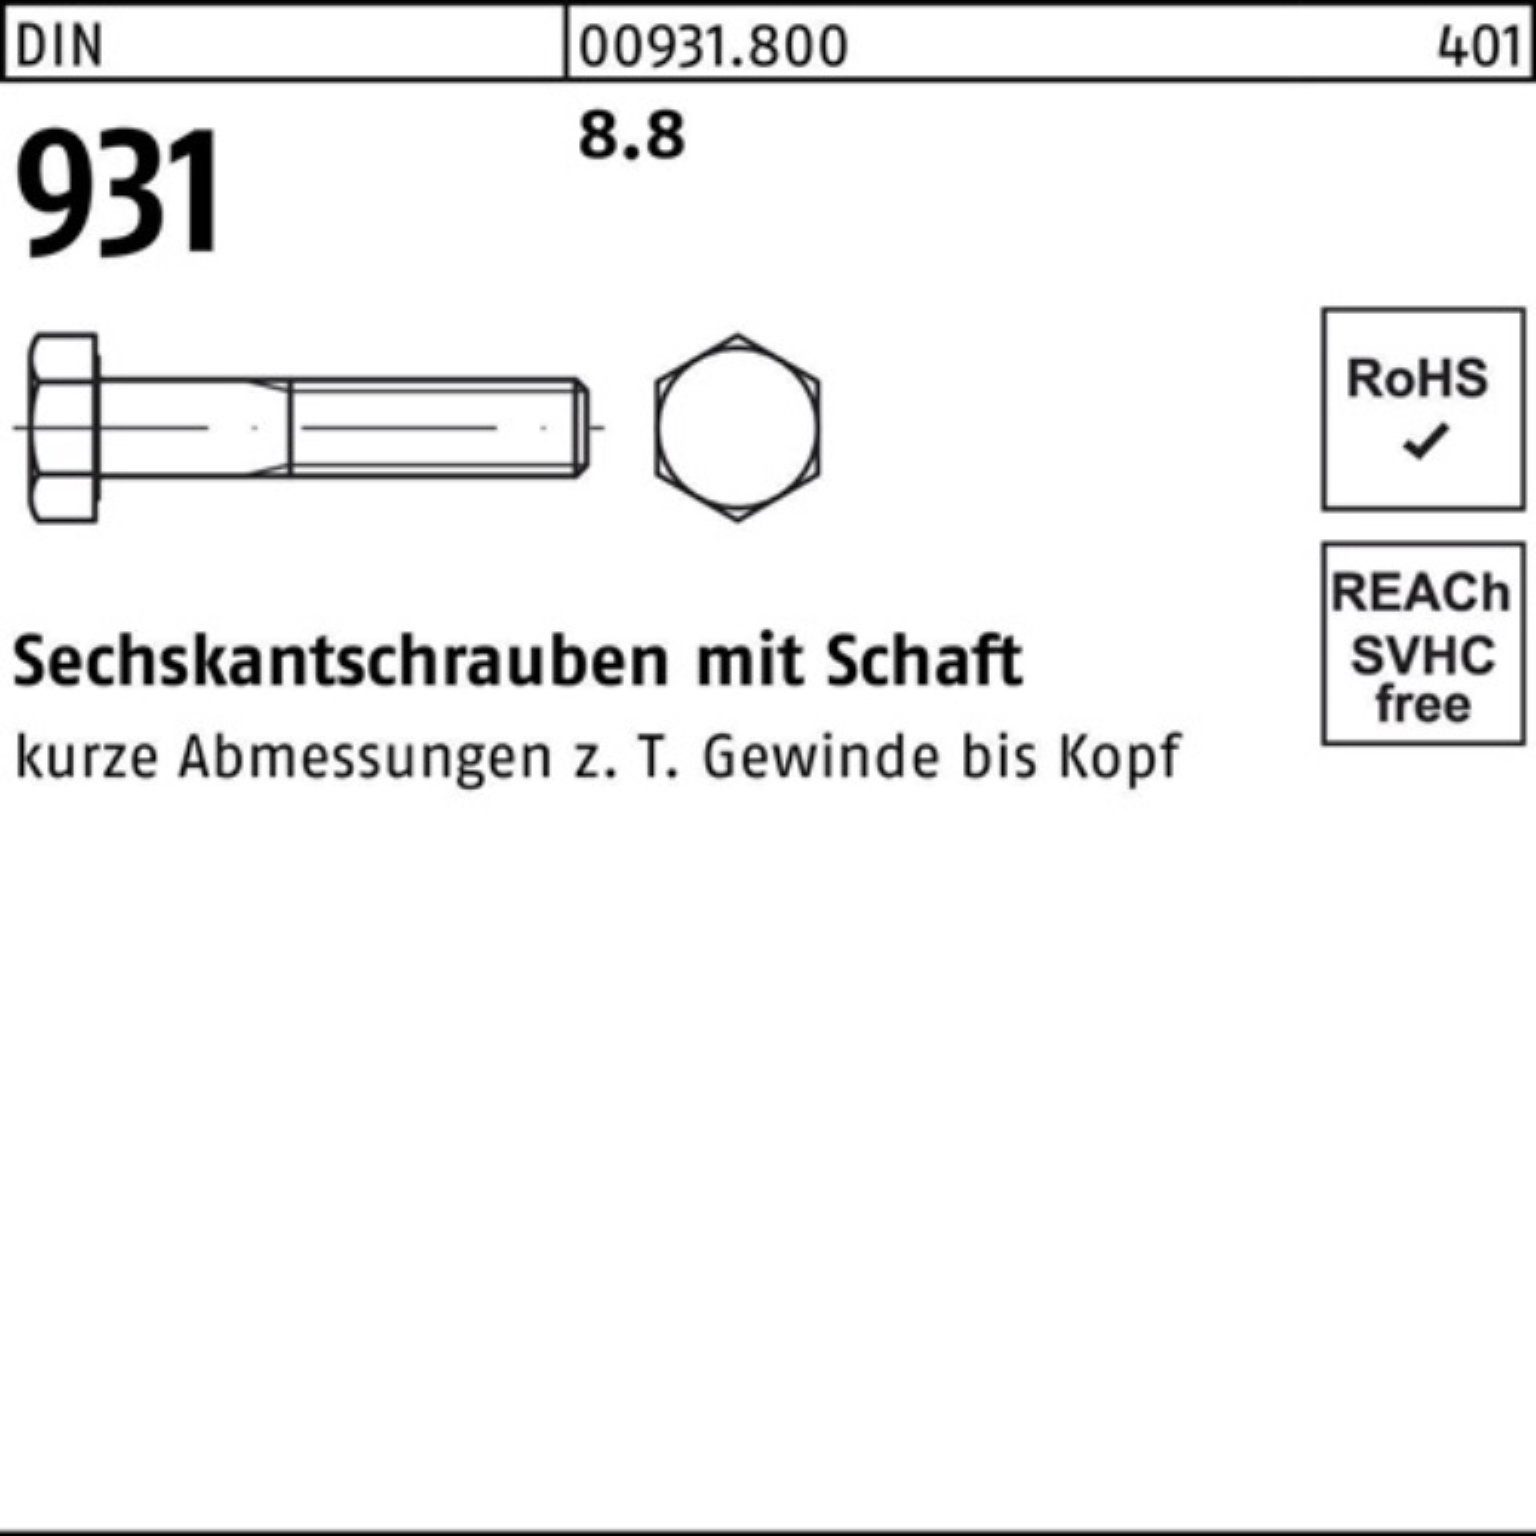 200 M42x Sechskantschraube 100er Pack Schaft Sechskantschraube Stück 931 DIN DIN 1 Reyher 8.8